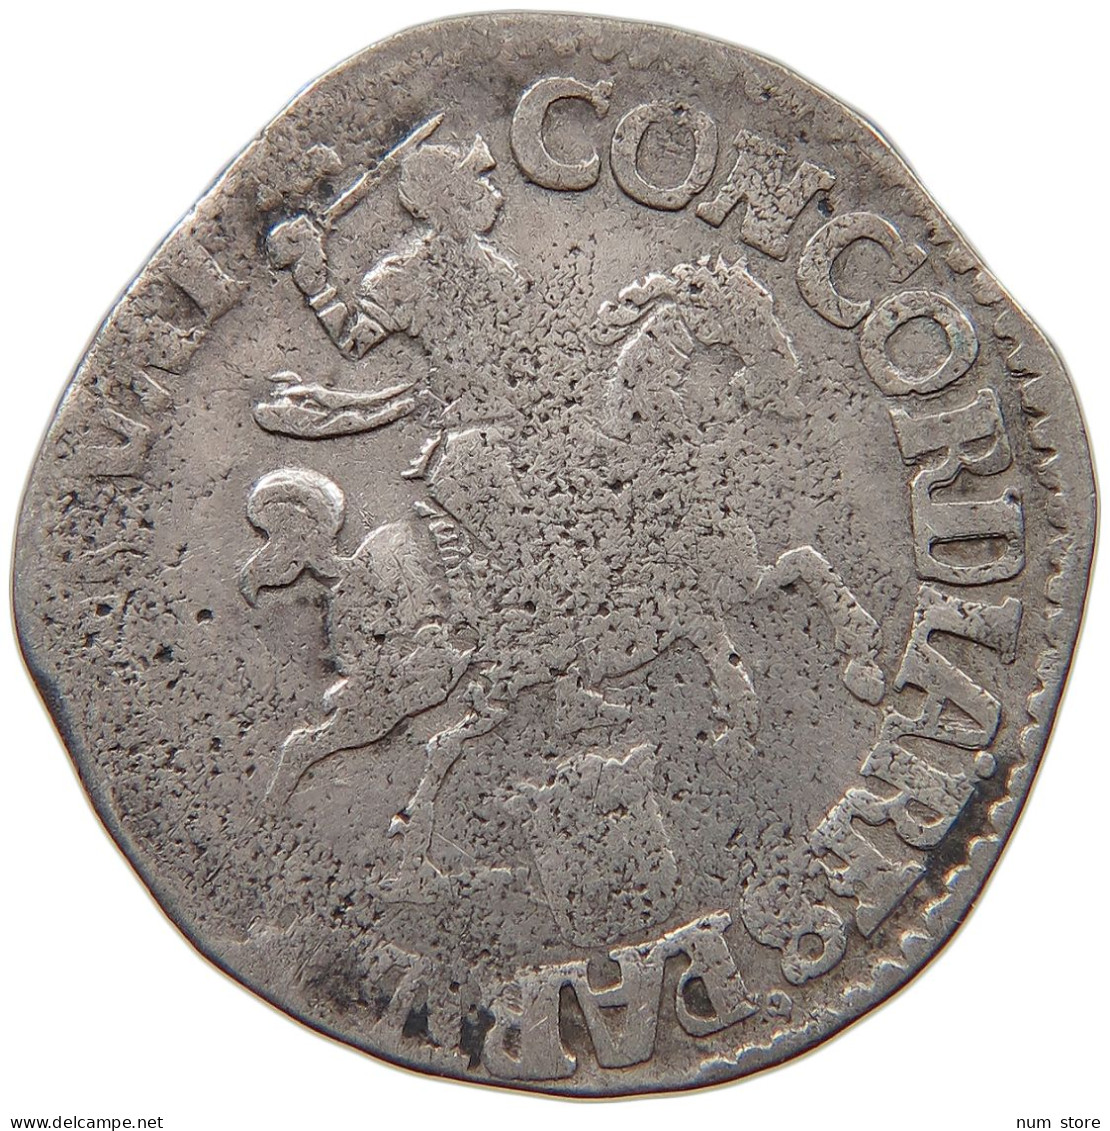 NETHERLANDS 6 STUIVER 1690  #c058 0147 - Monete Provinciali